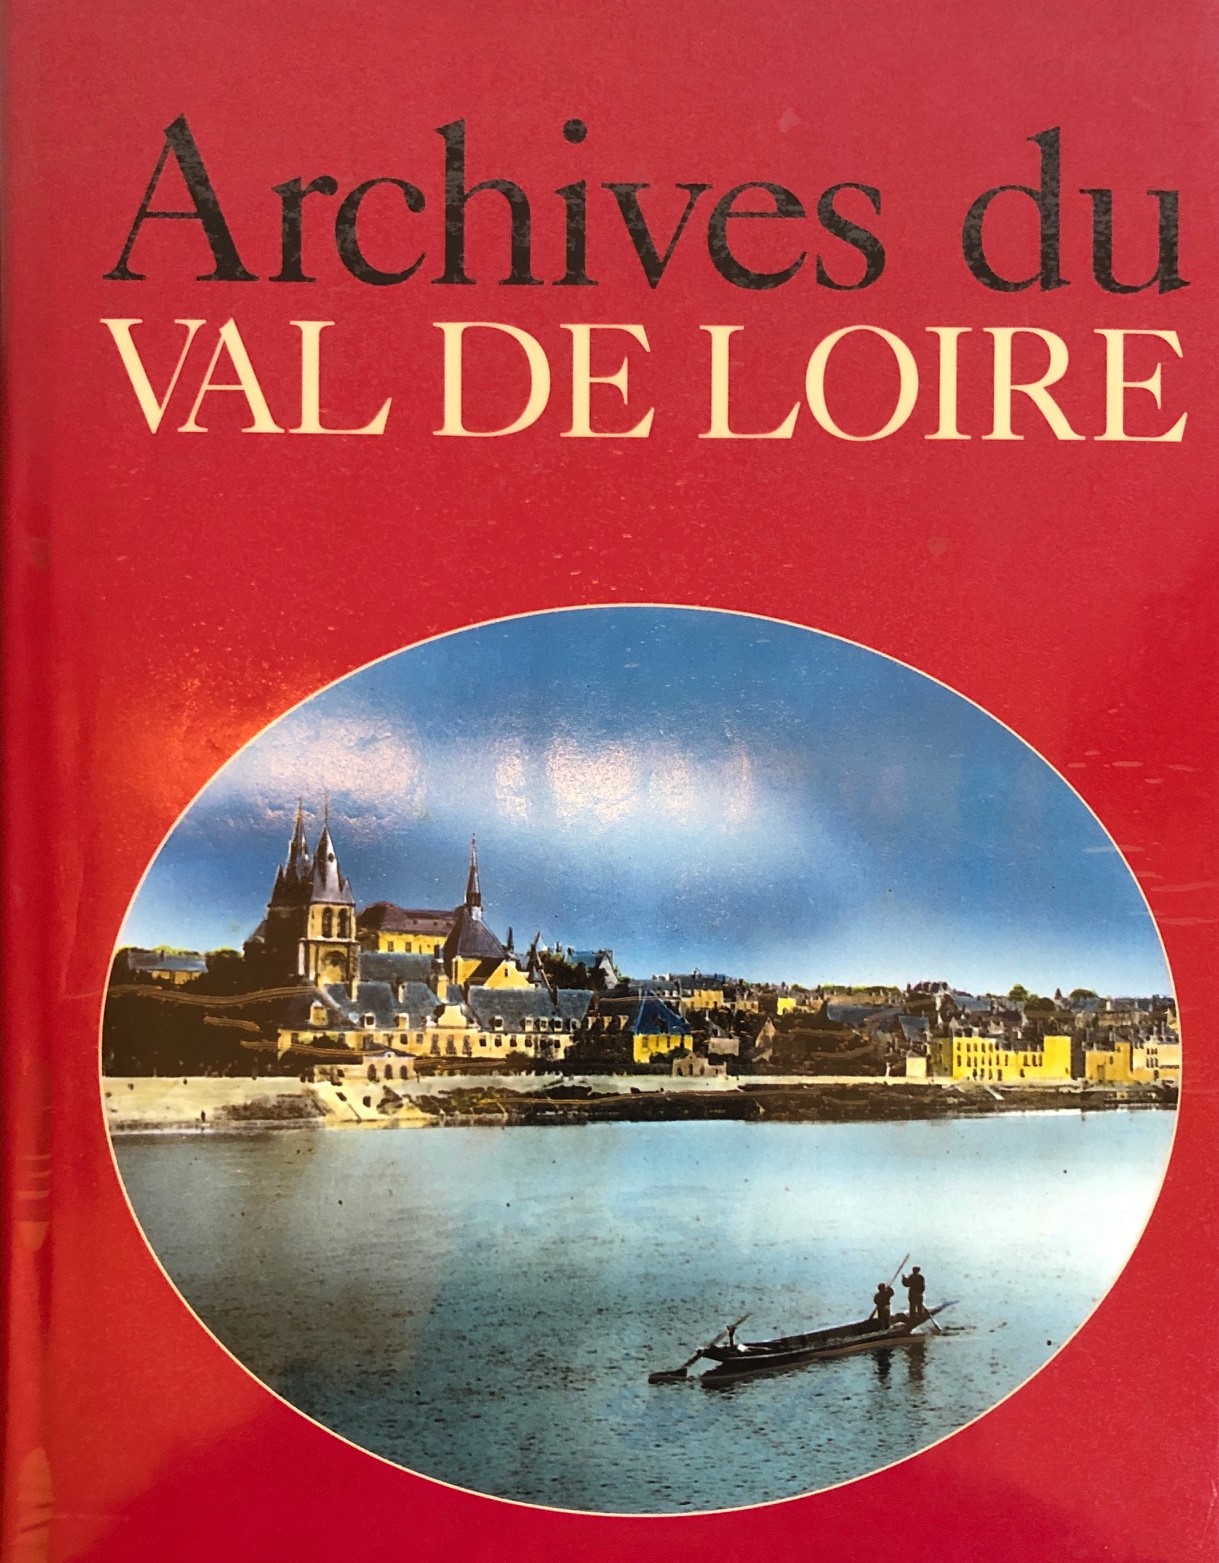 BORGE Archives du val de loire 5IMG_1358